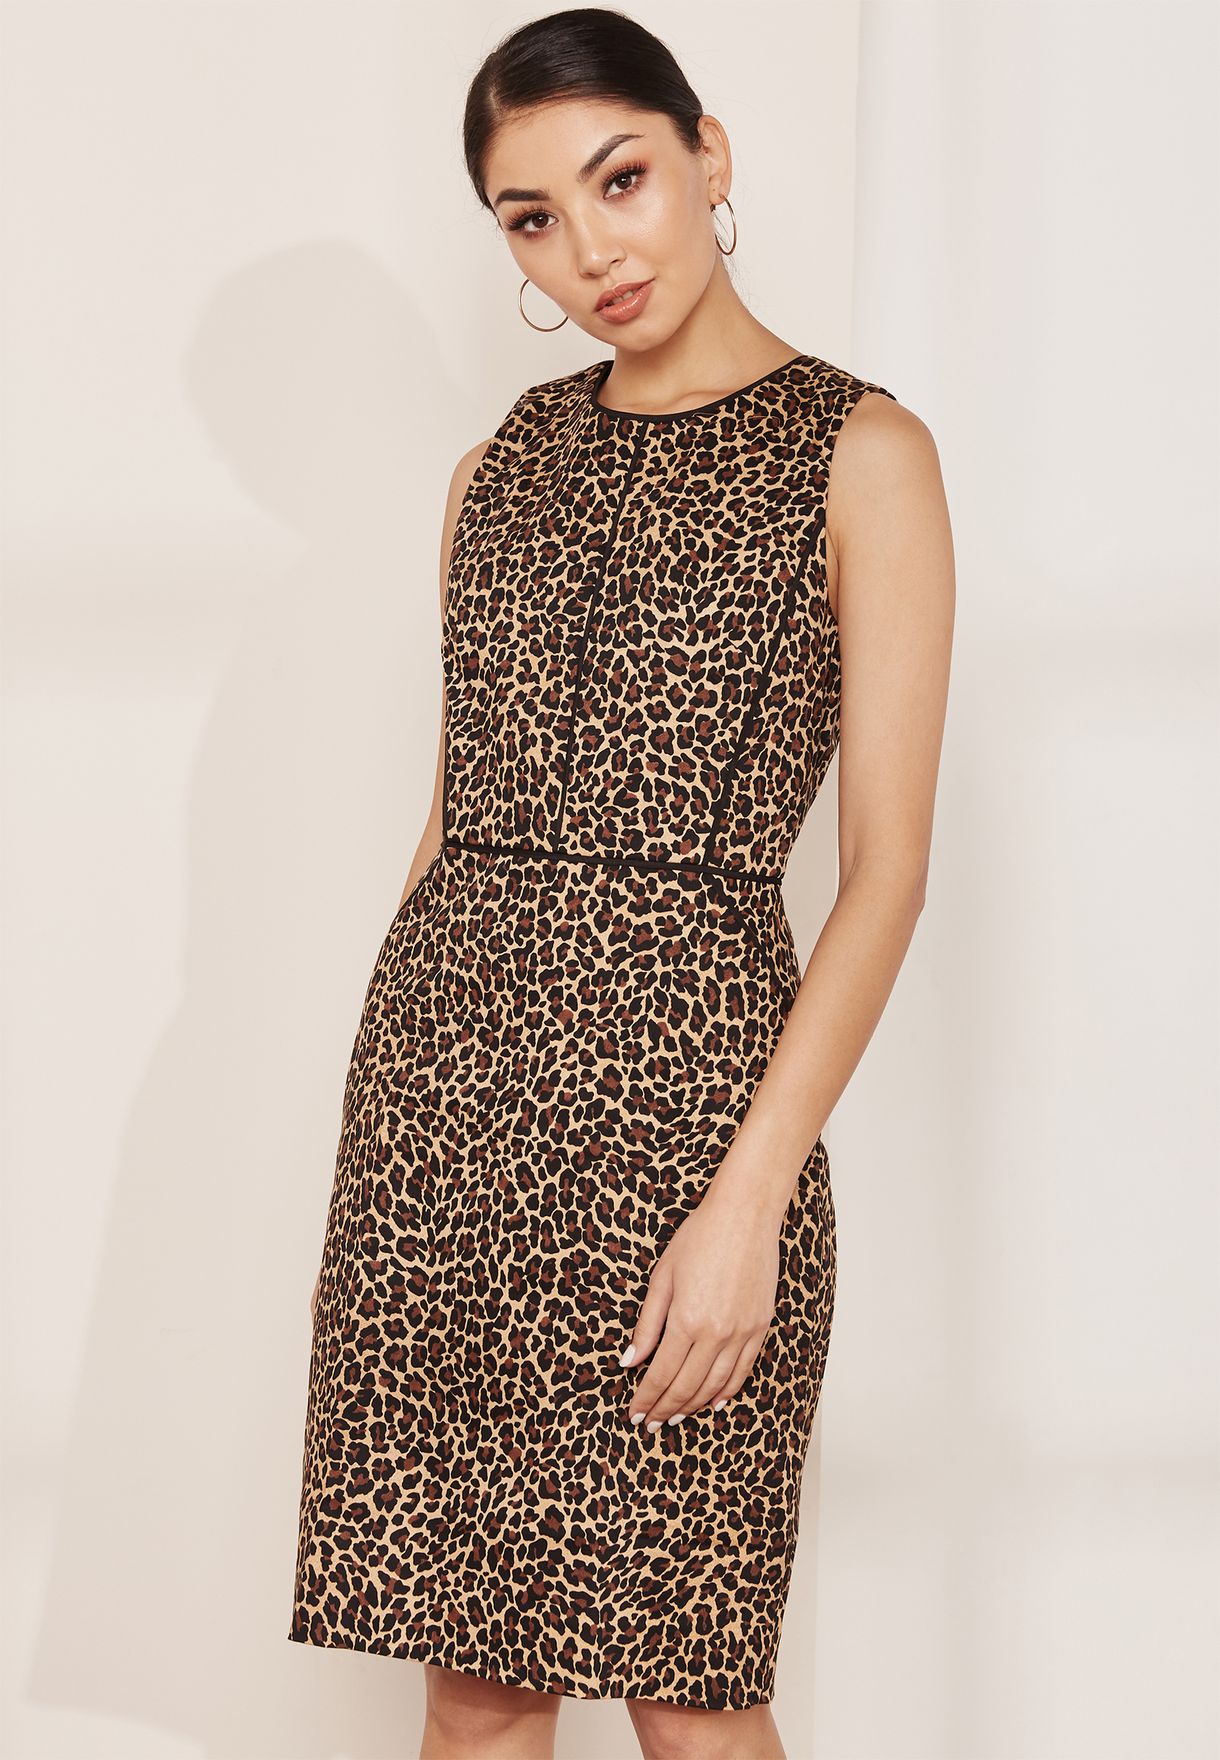 j crew leopard print dress